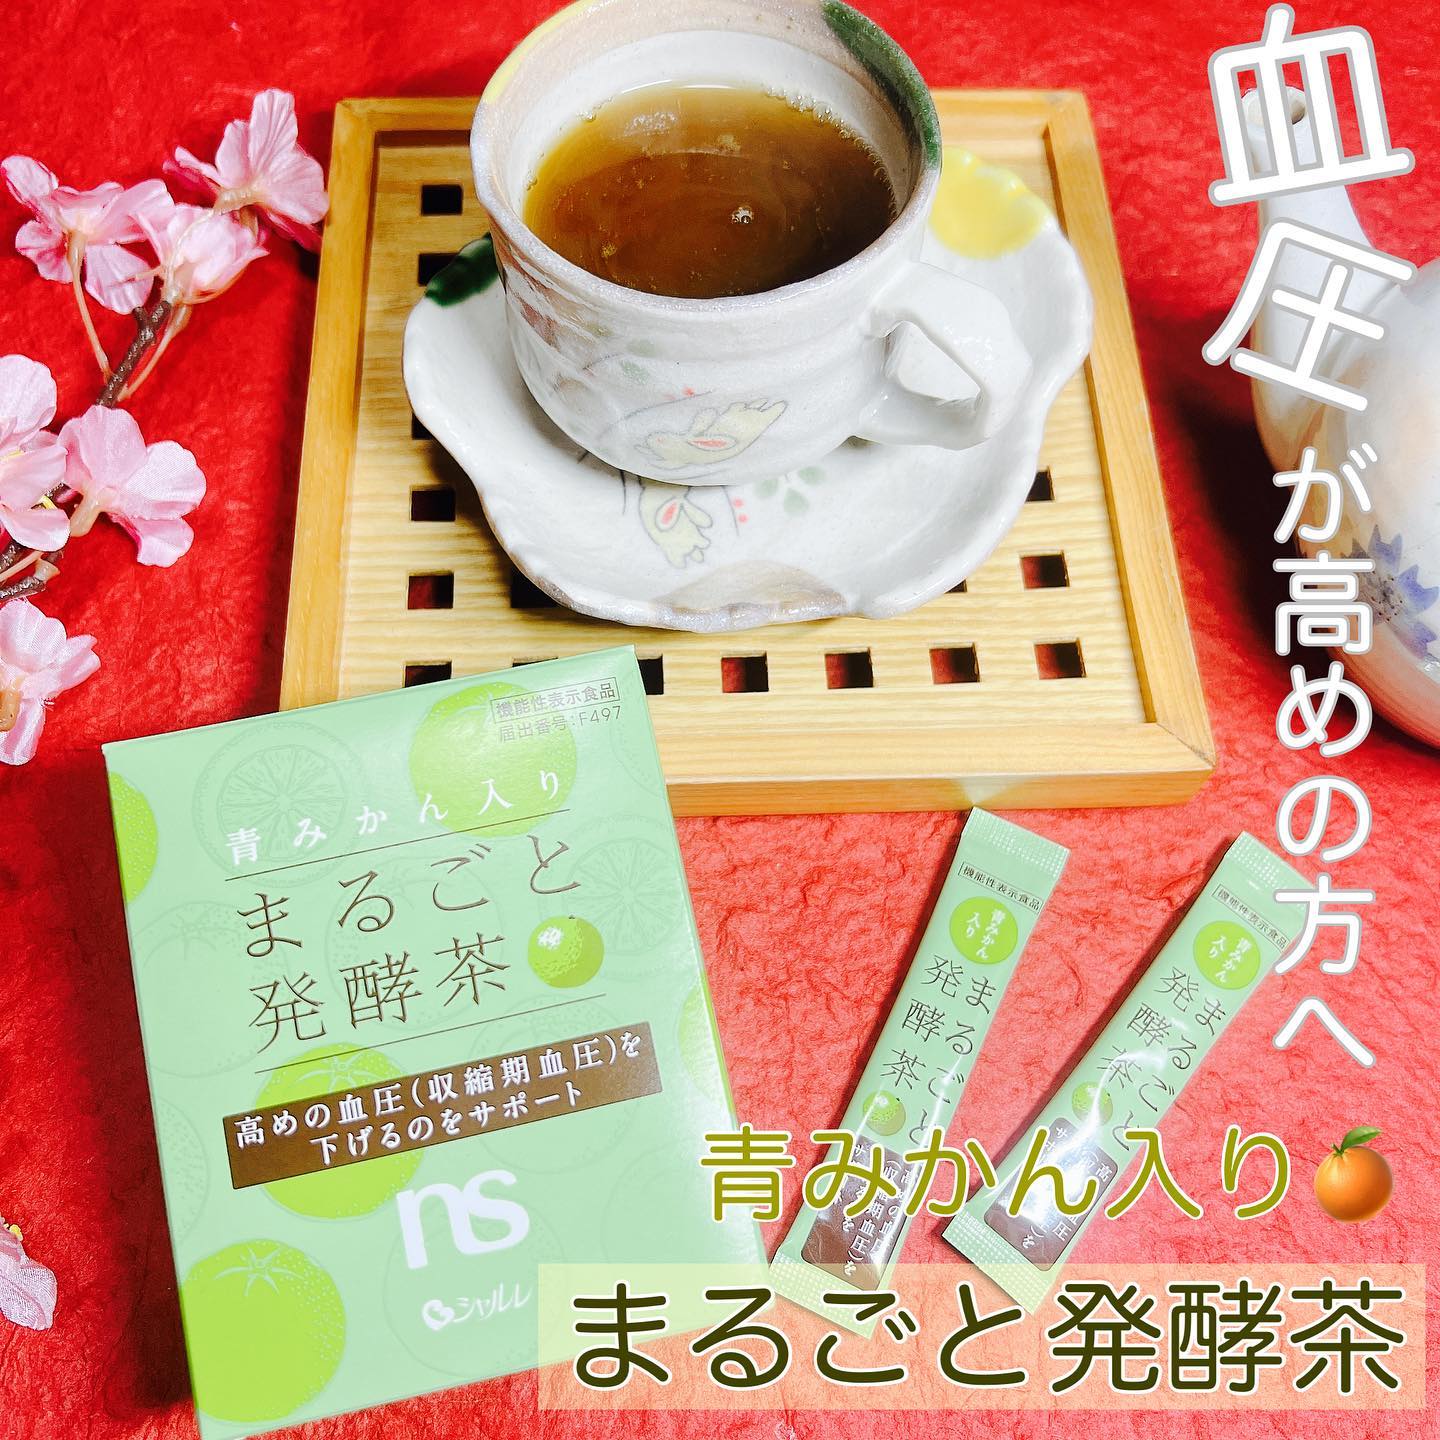 口コミ投稿：🍵血圧が高めの方へ🌸@charle_official_jp 様の青みかん入りまるごと発酵茶🍵🍊100%長崎…